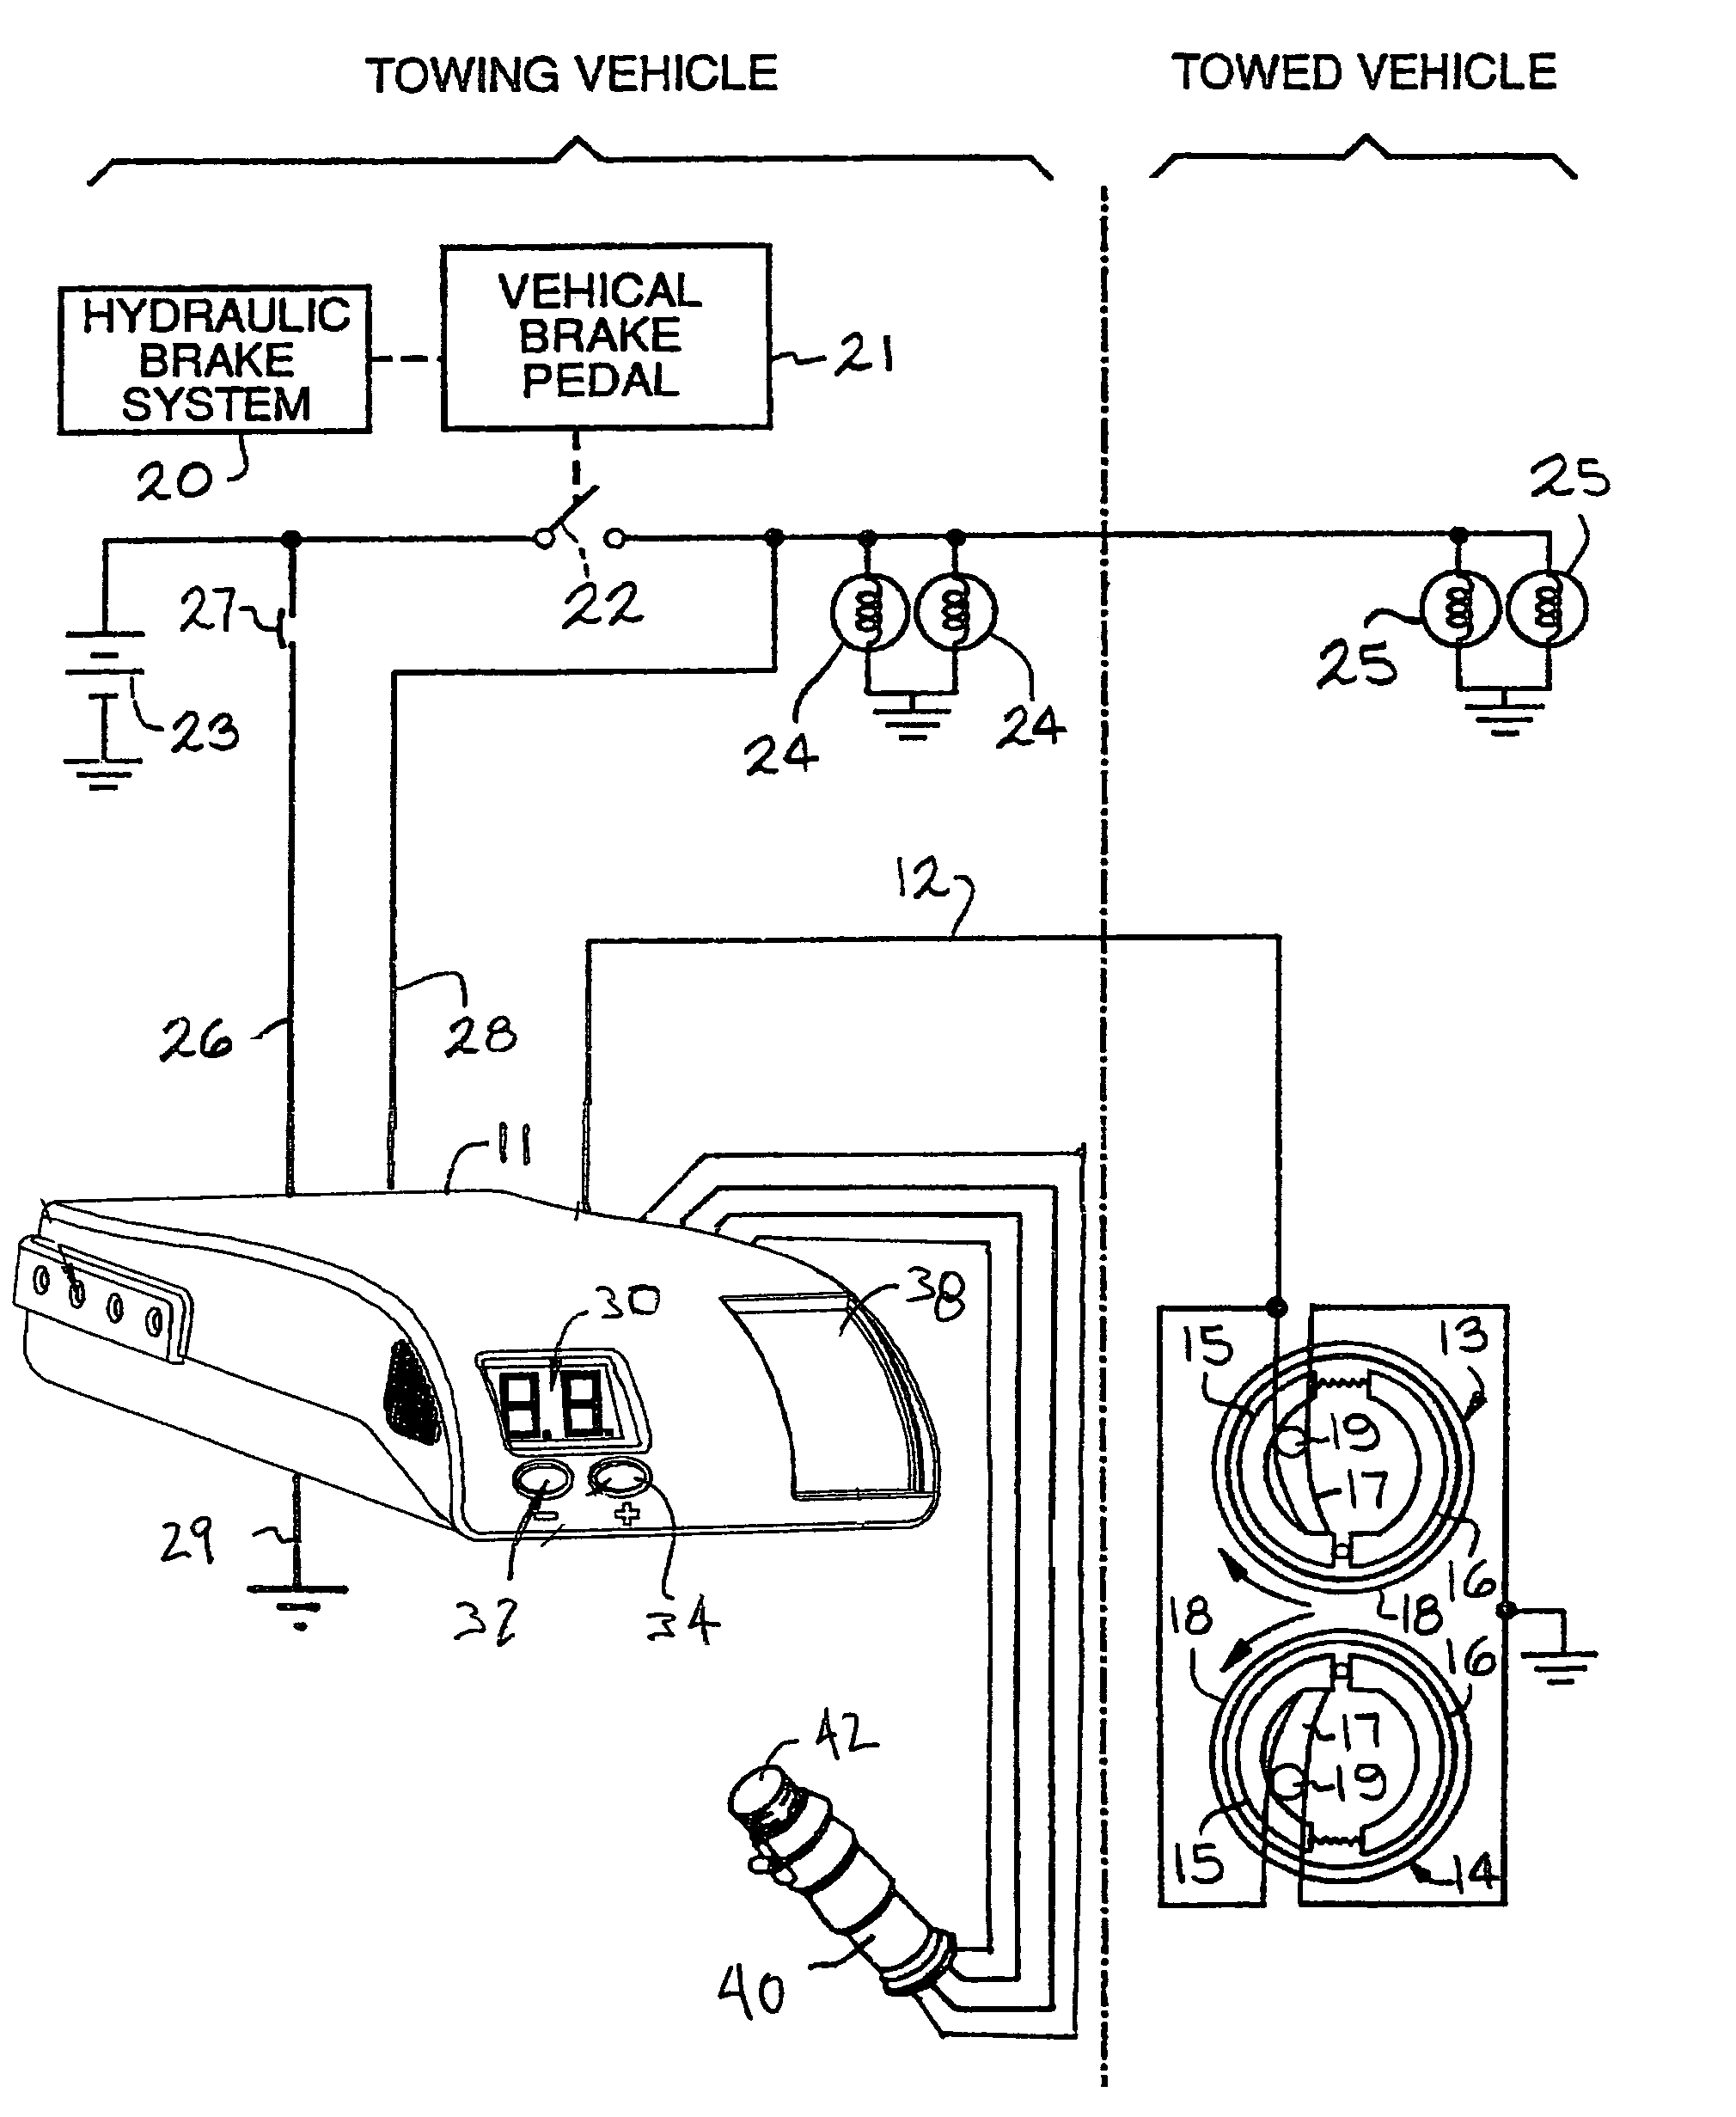 Electric trailer brake controller